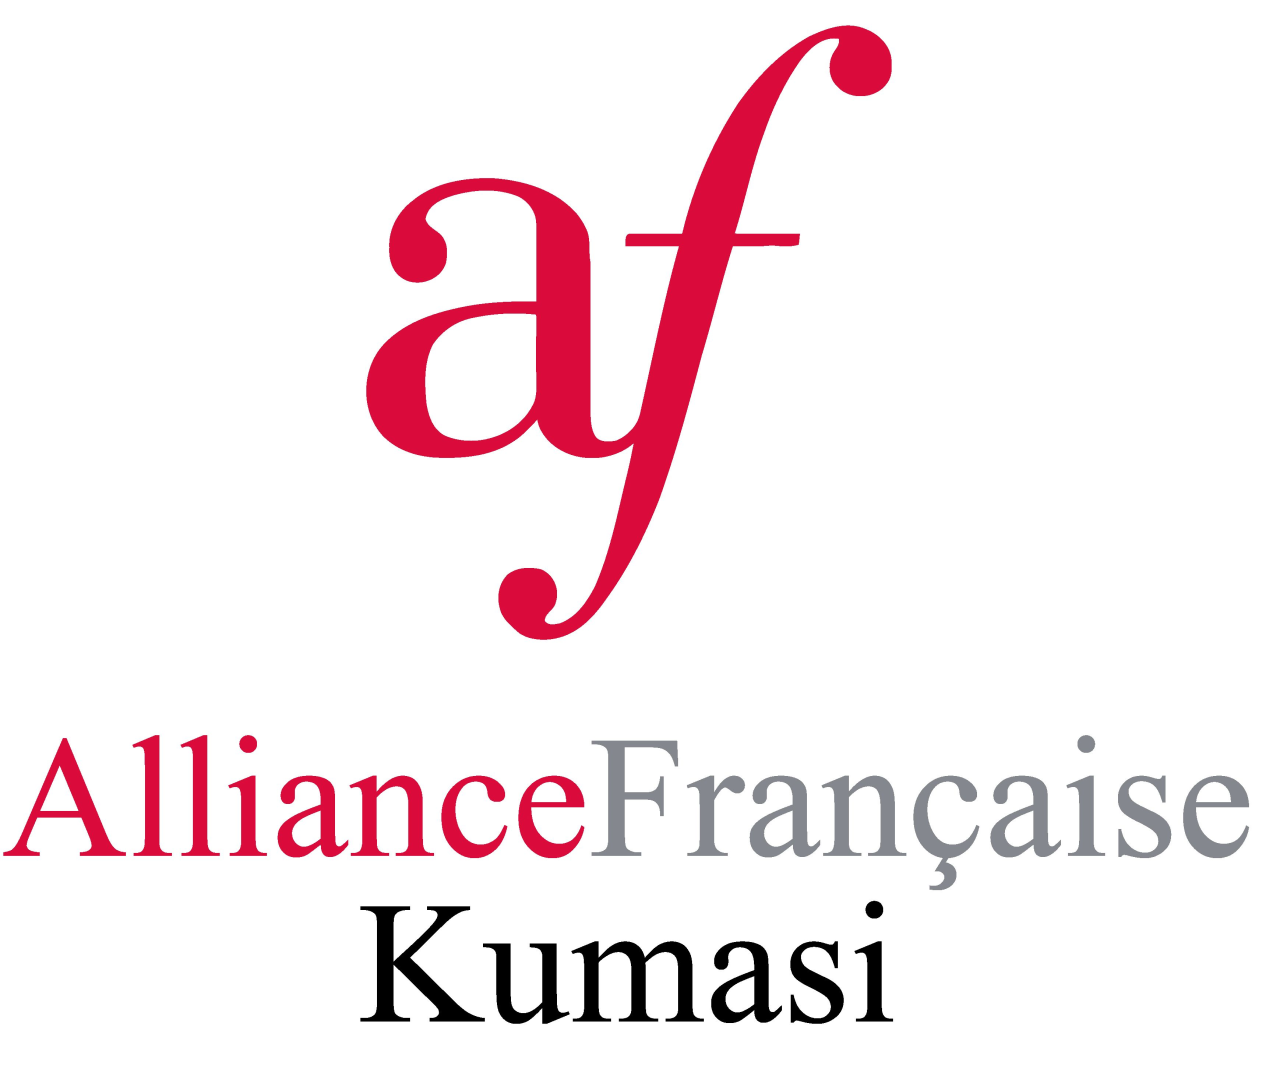 Alliace Francaise Kumasi's web page